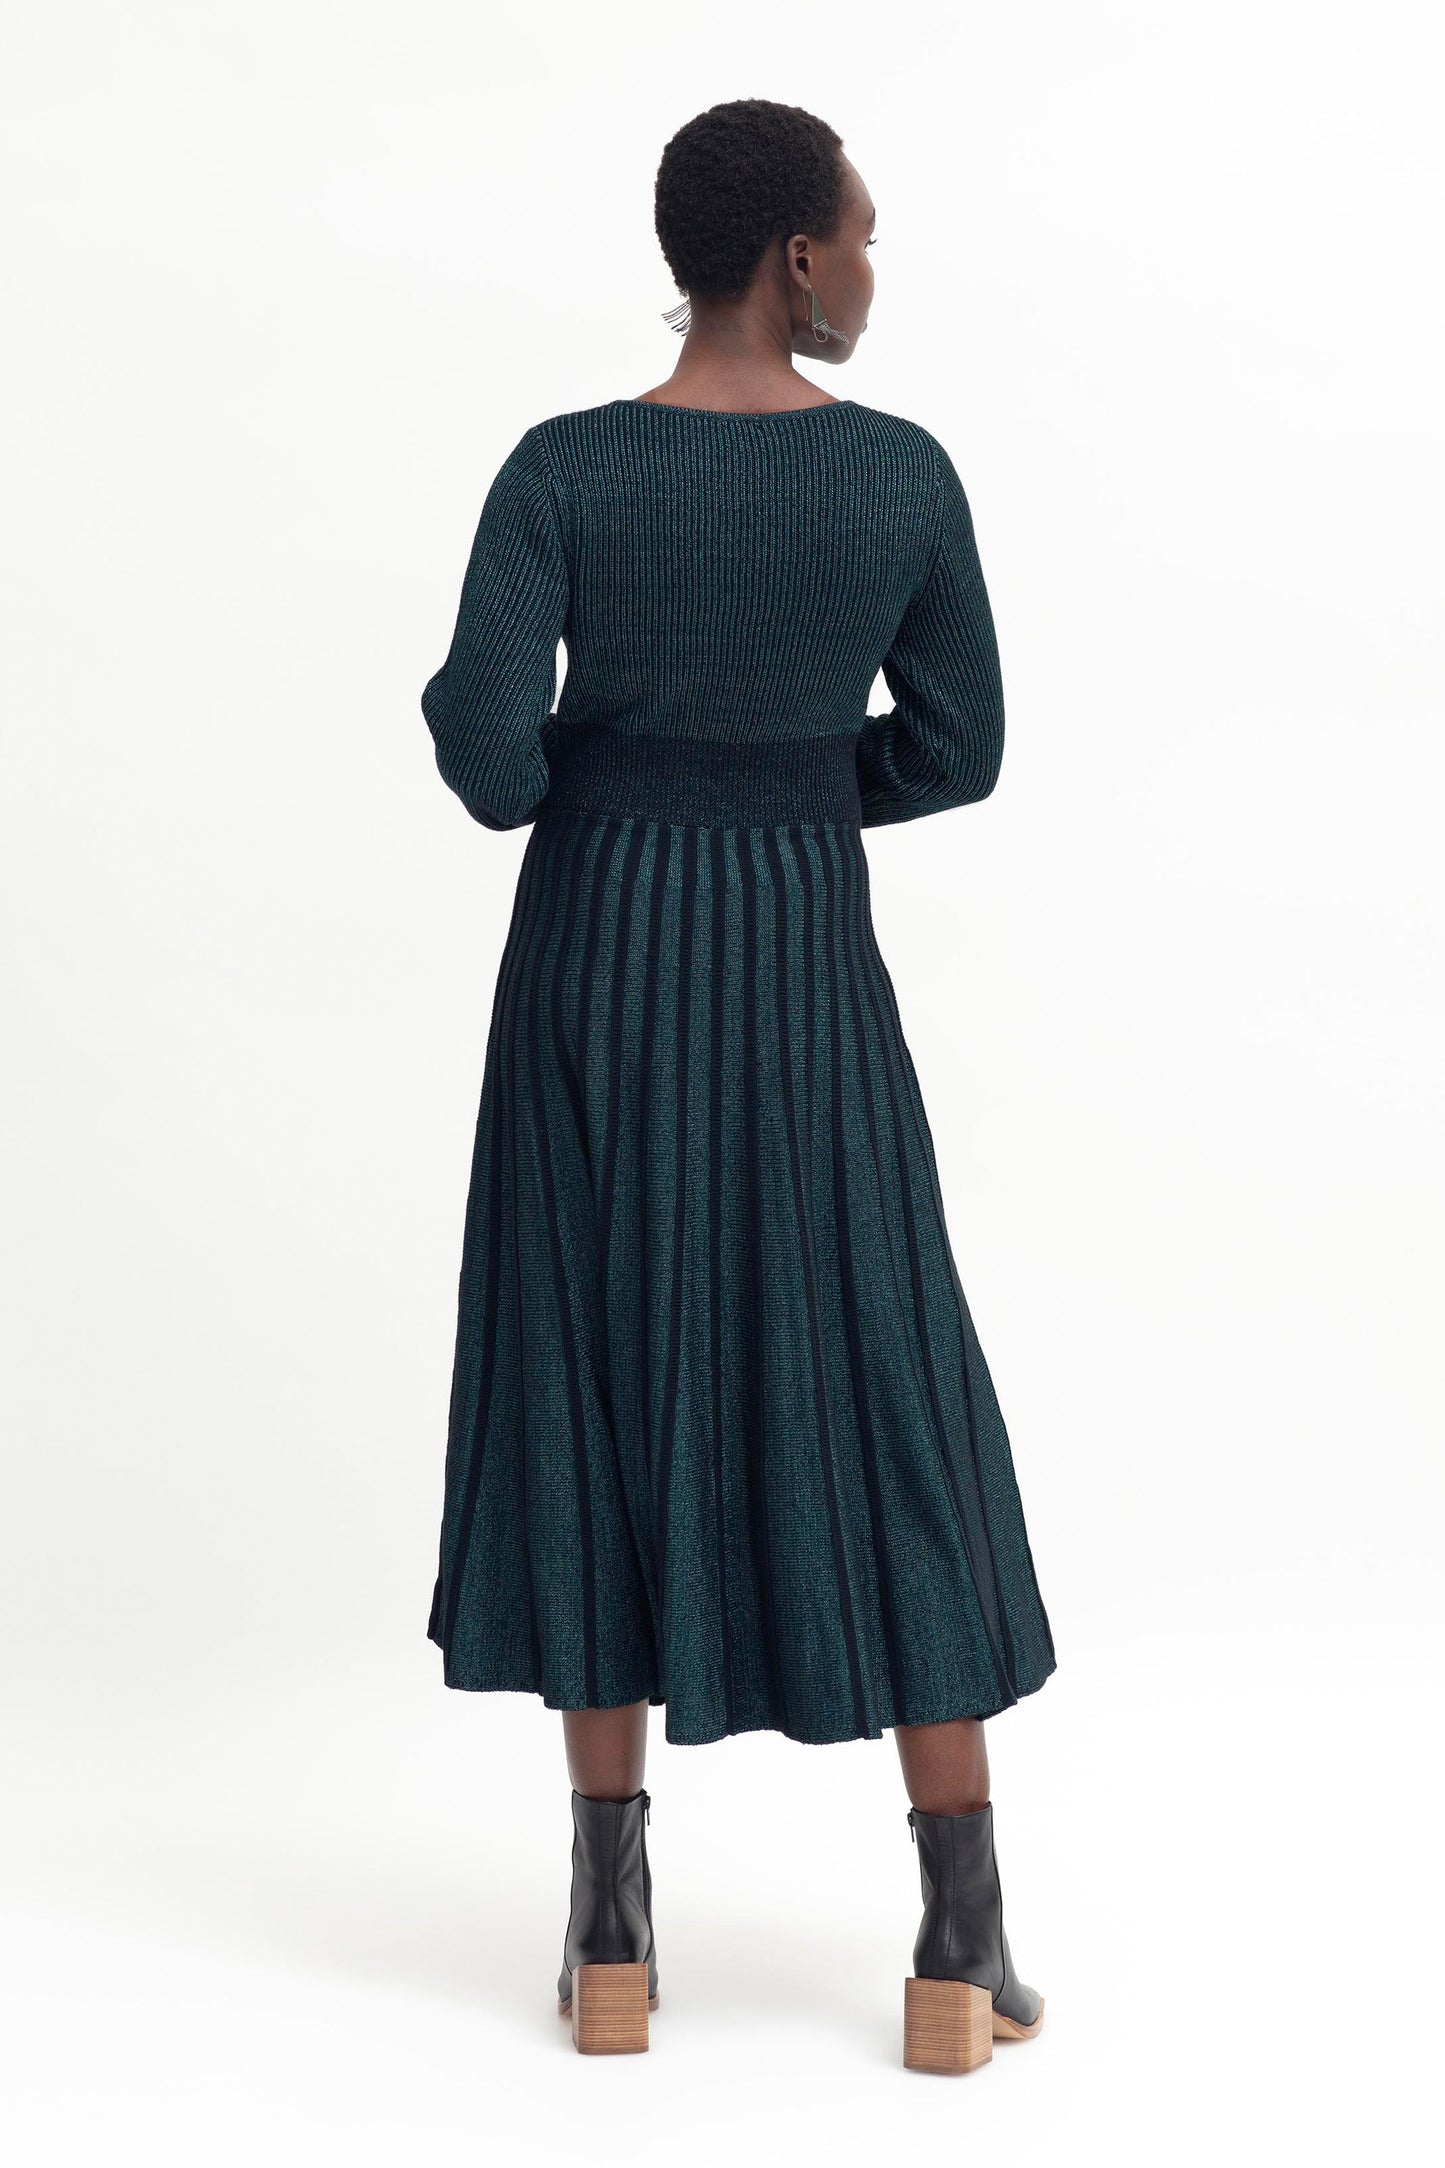 Glittra Lurex Knit Metallic Dress Model Back | TEAL METALLIC